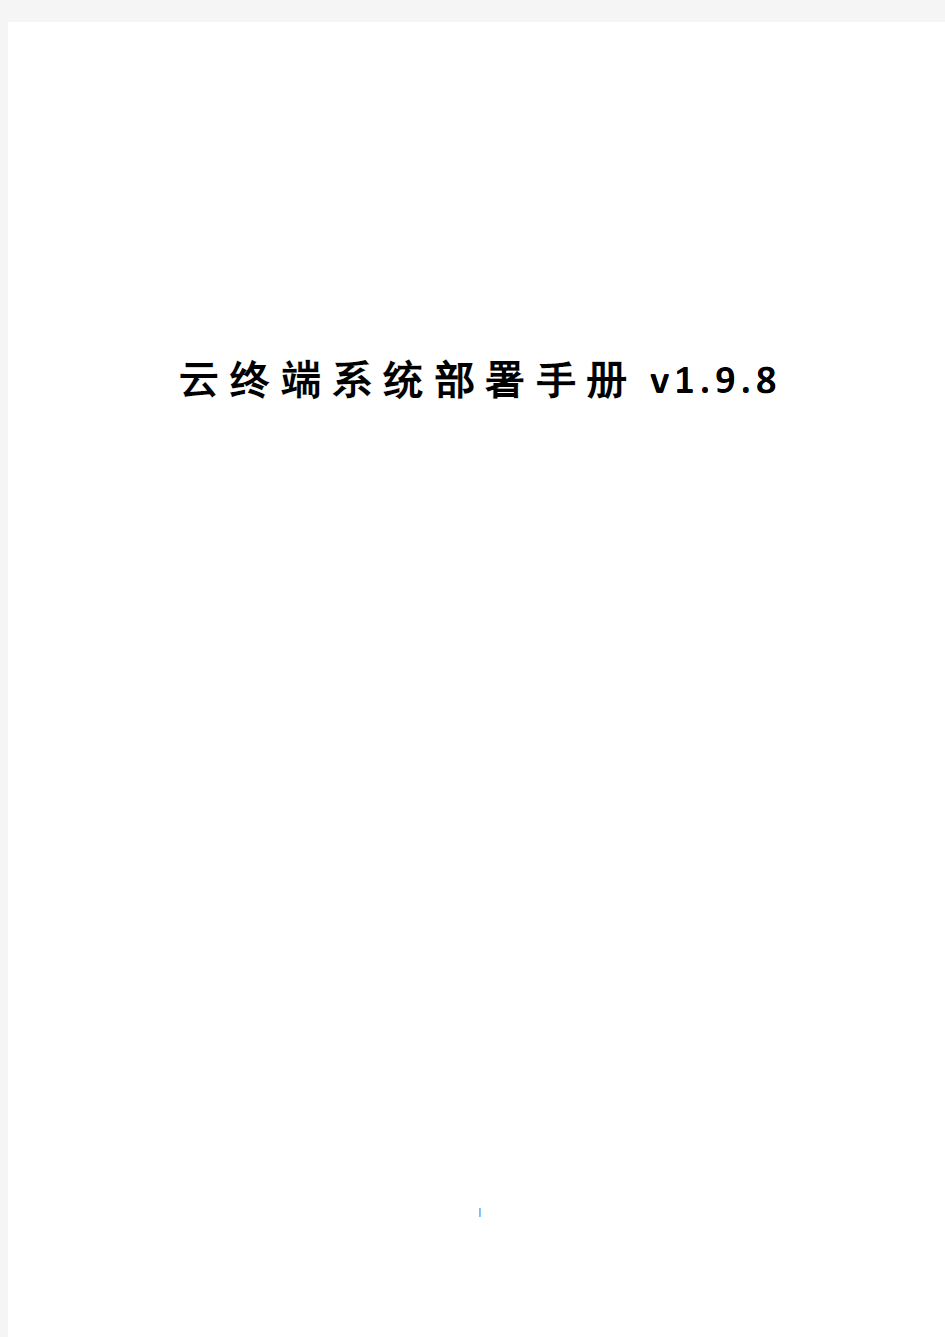 云终端系统部署手册v1.9.8